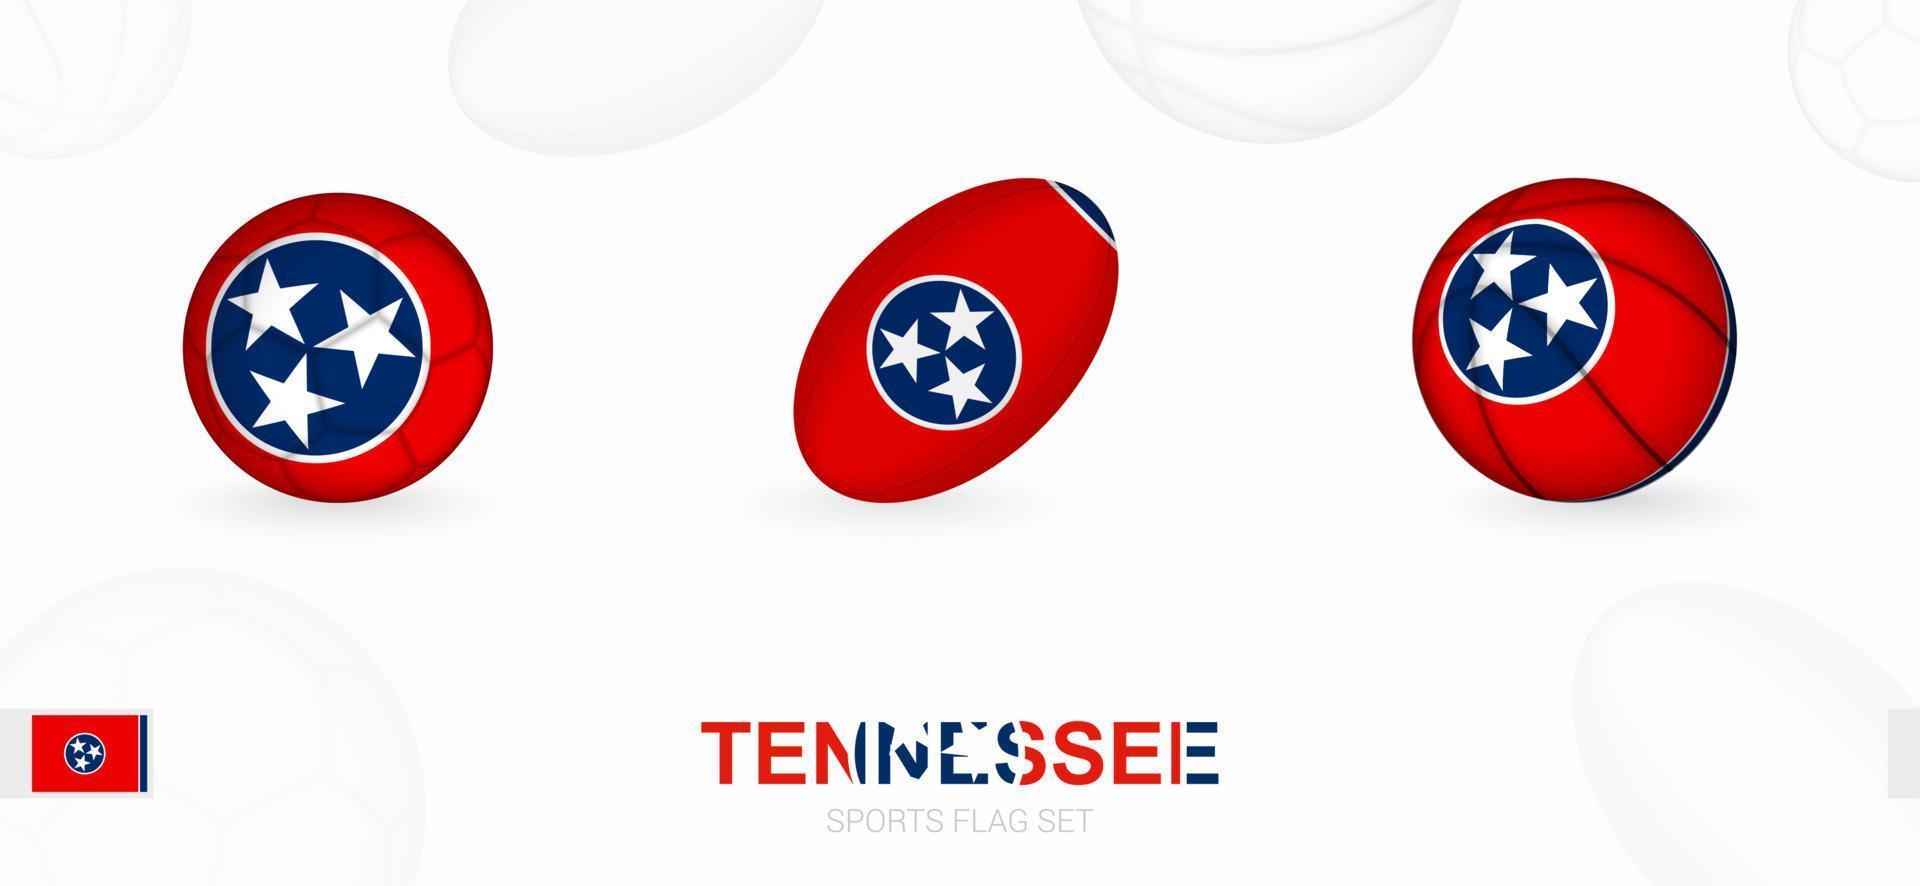 des sports Icônes pour football, le rugby et basketball avec le drapeau de Tennessee. vecteur